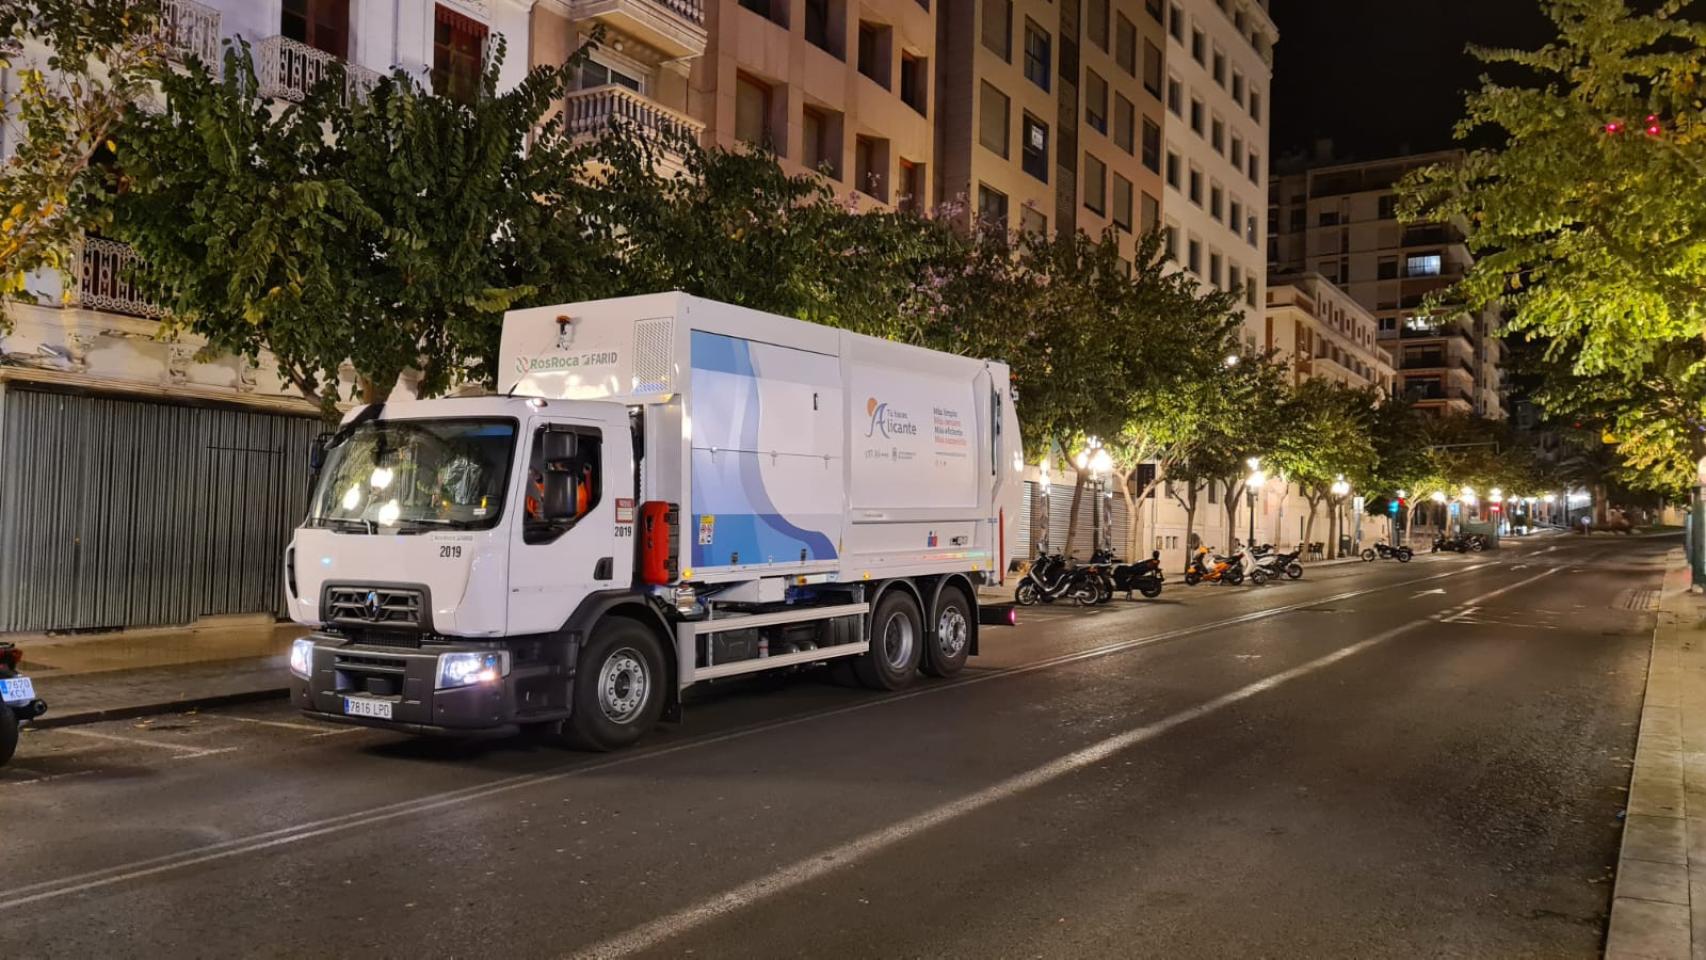 Servicio de Recogida de residuos urbanos (RU) de Alicante.